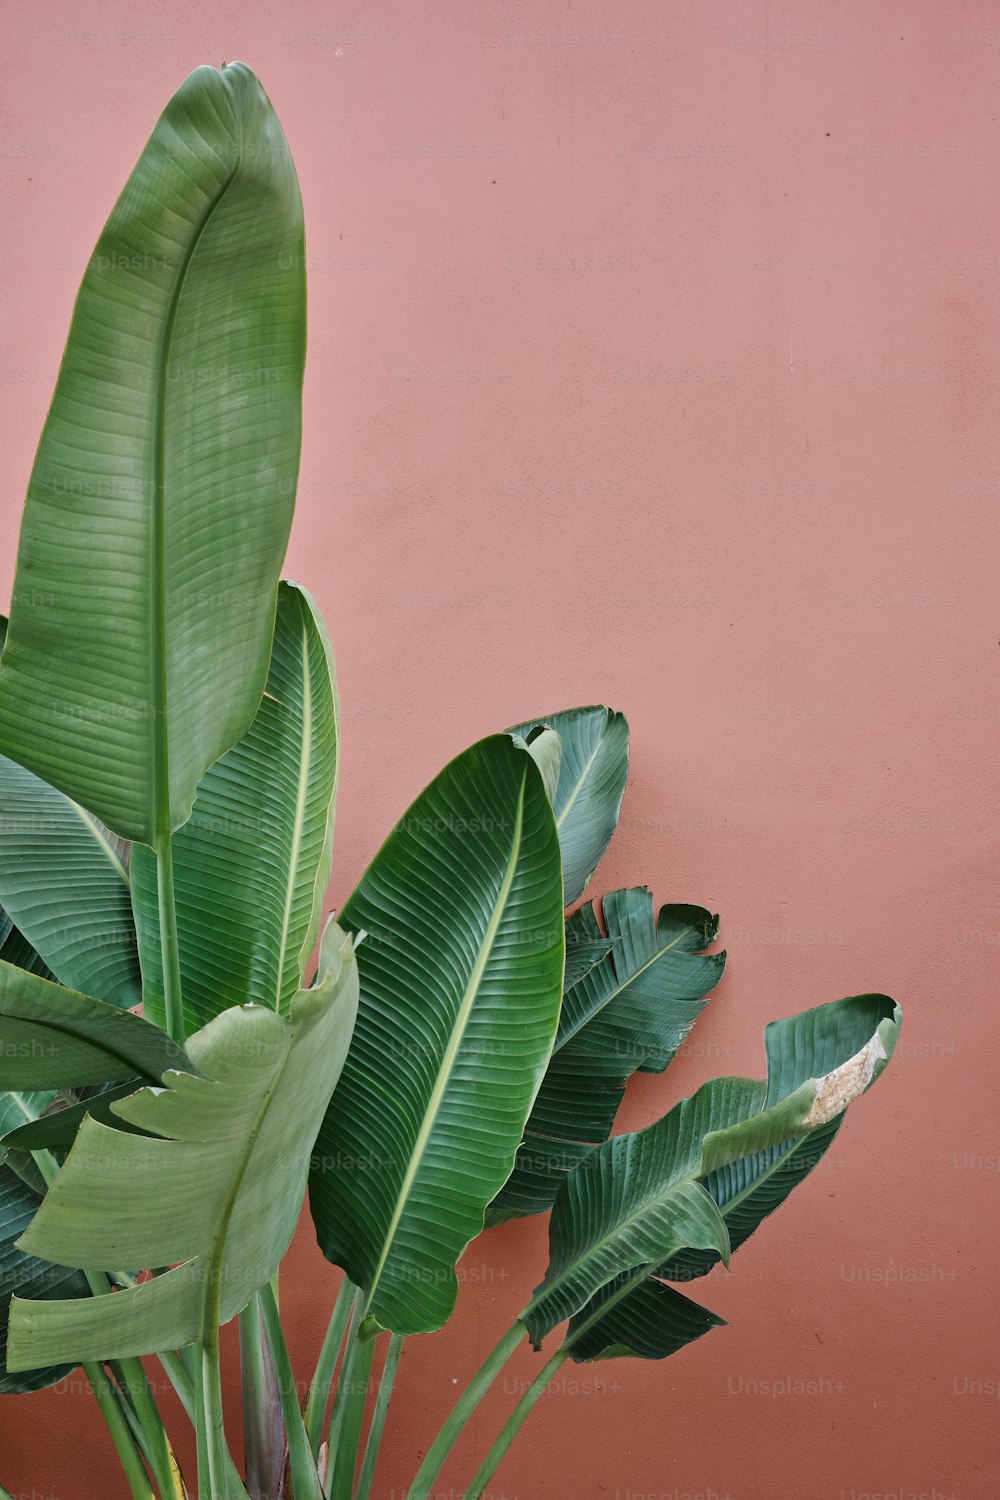 Una planta con hojas verdes contra una pared rosada